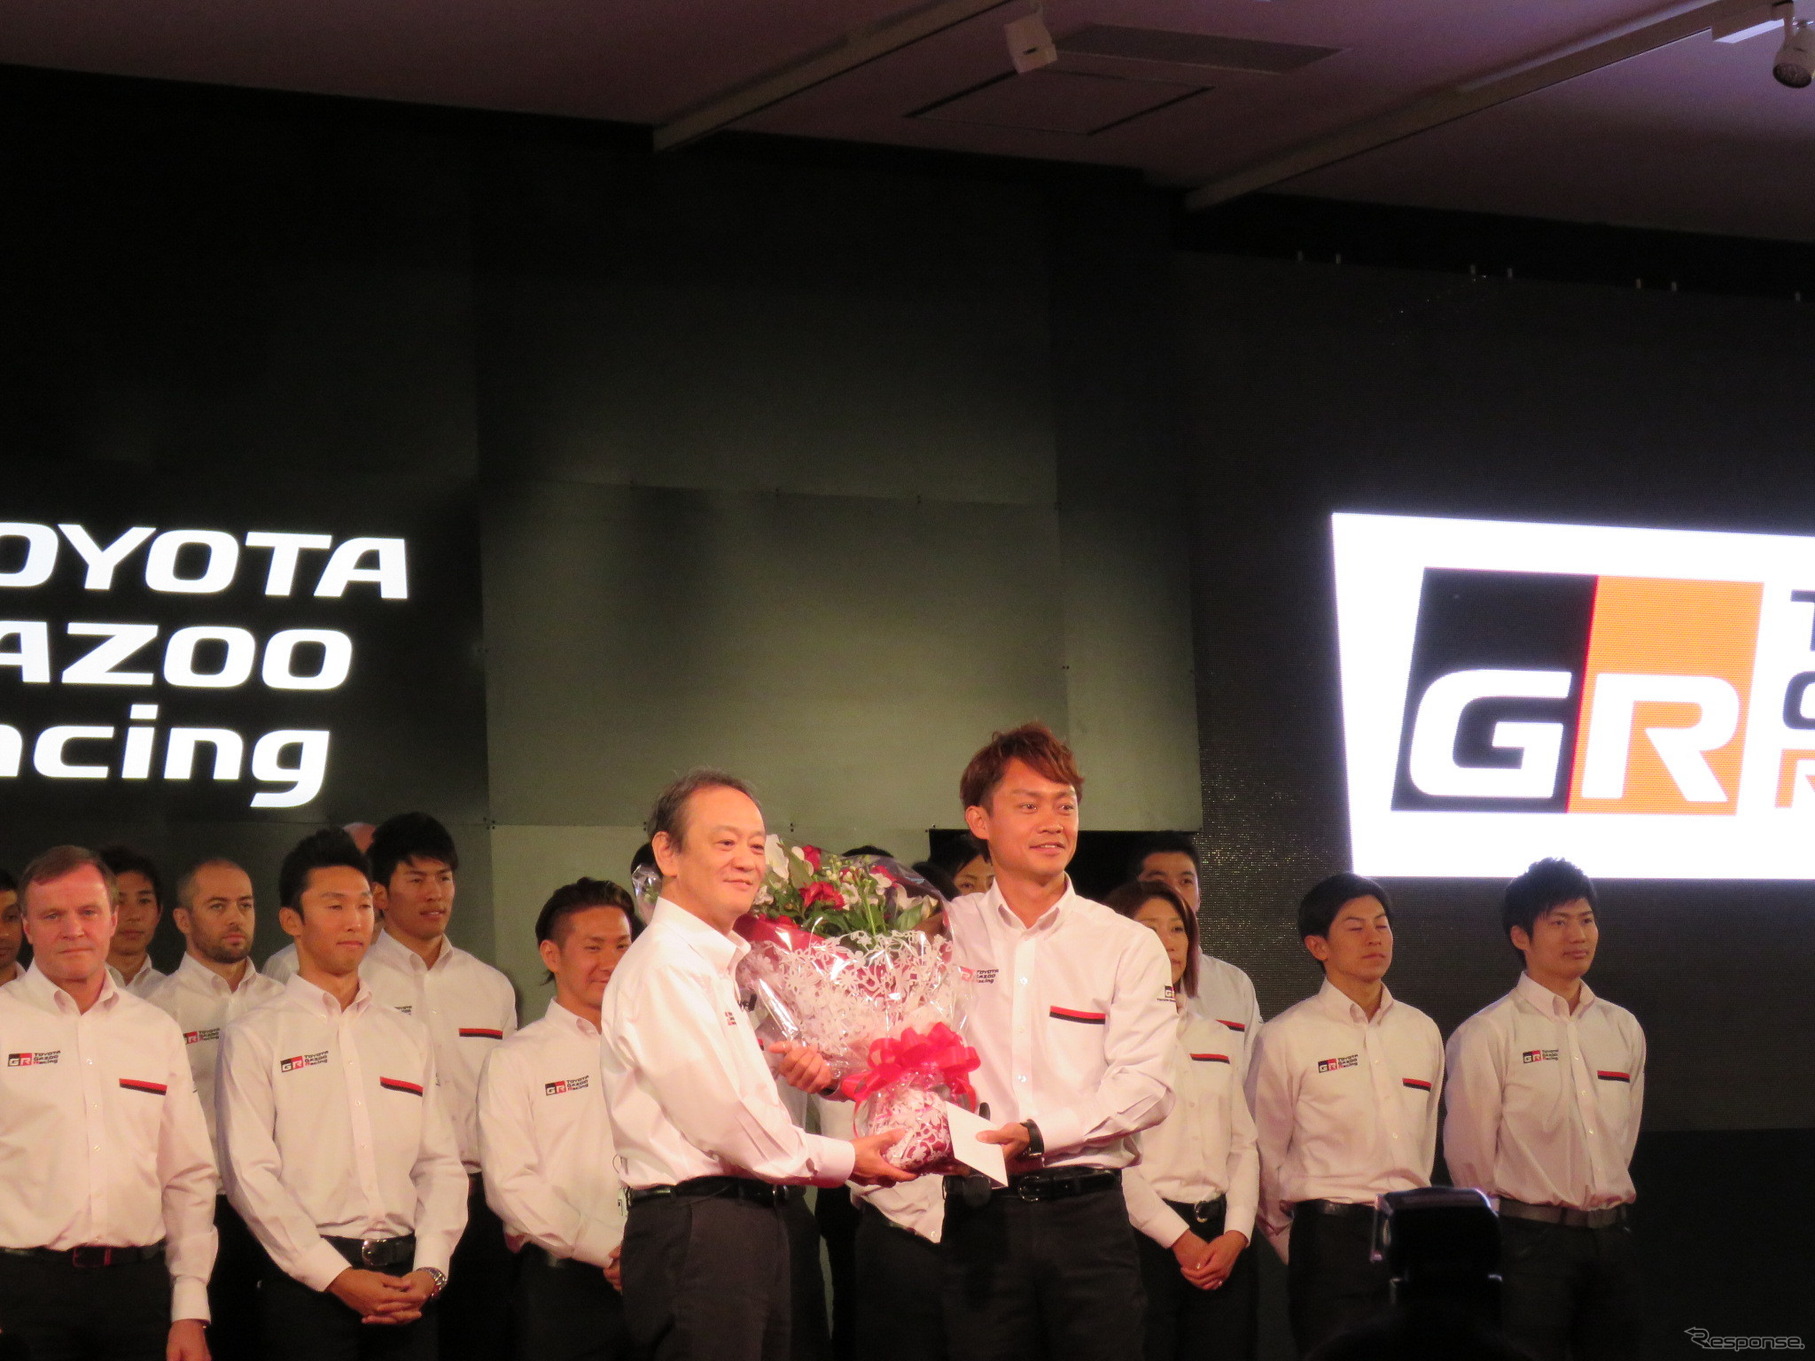 GT500の現役を退く脇阪に、トヨタの伊勢専務から花束が贈呈された。